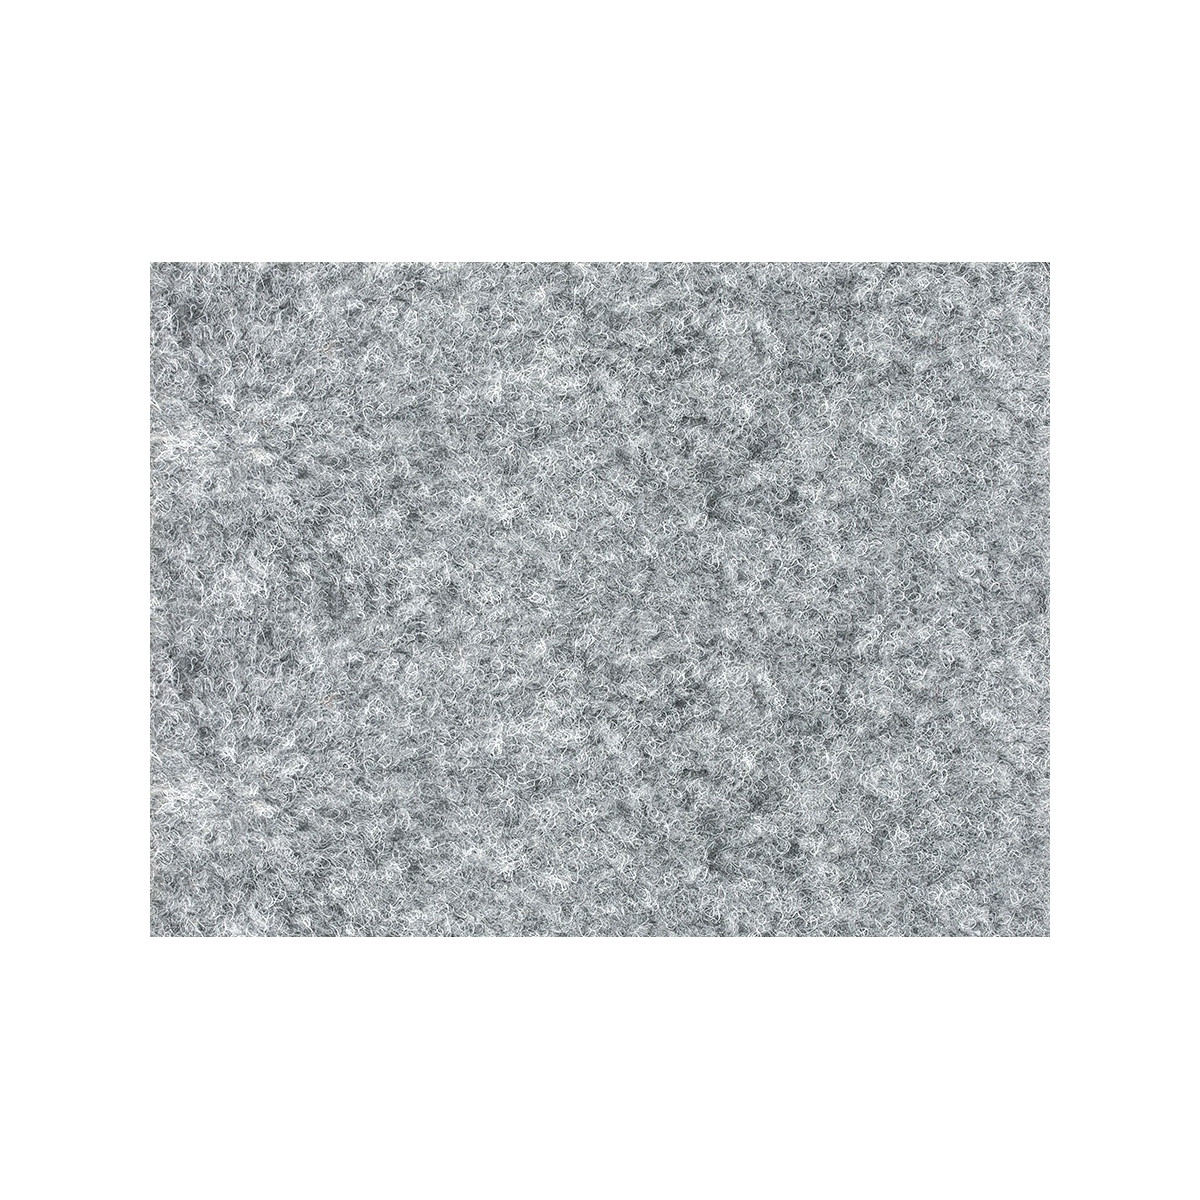 AKCE: 277x900 cm Metrážový koberec Santana 14 šedá s podkladem resine, zátěžový